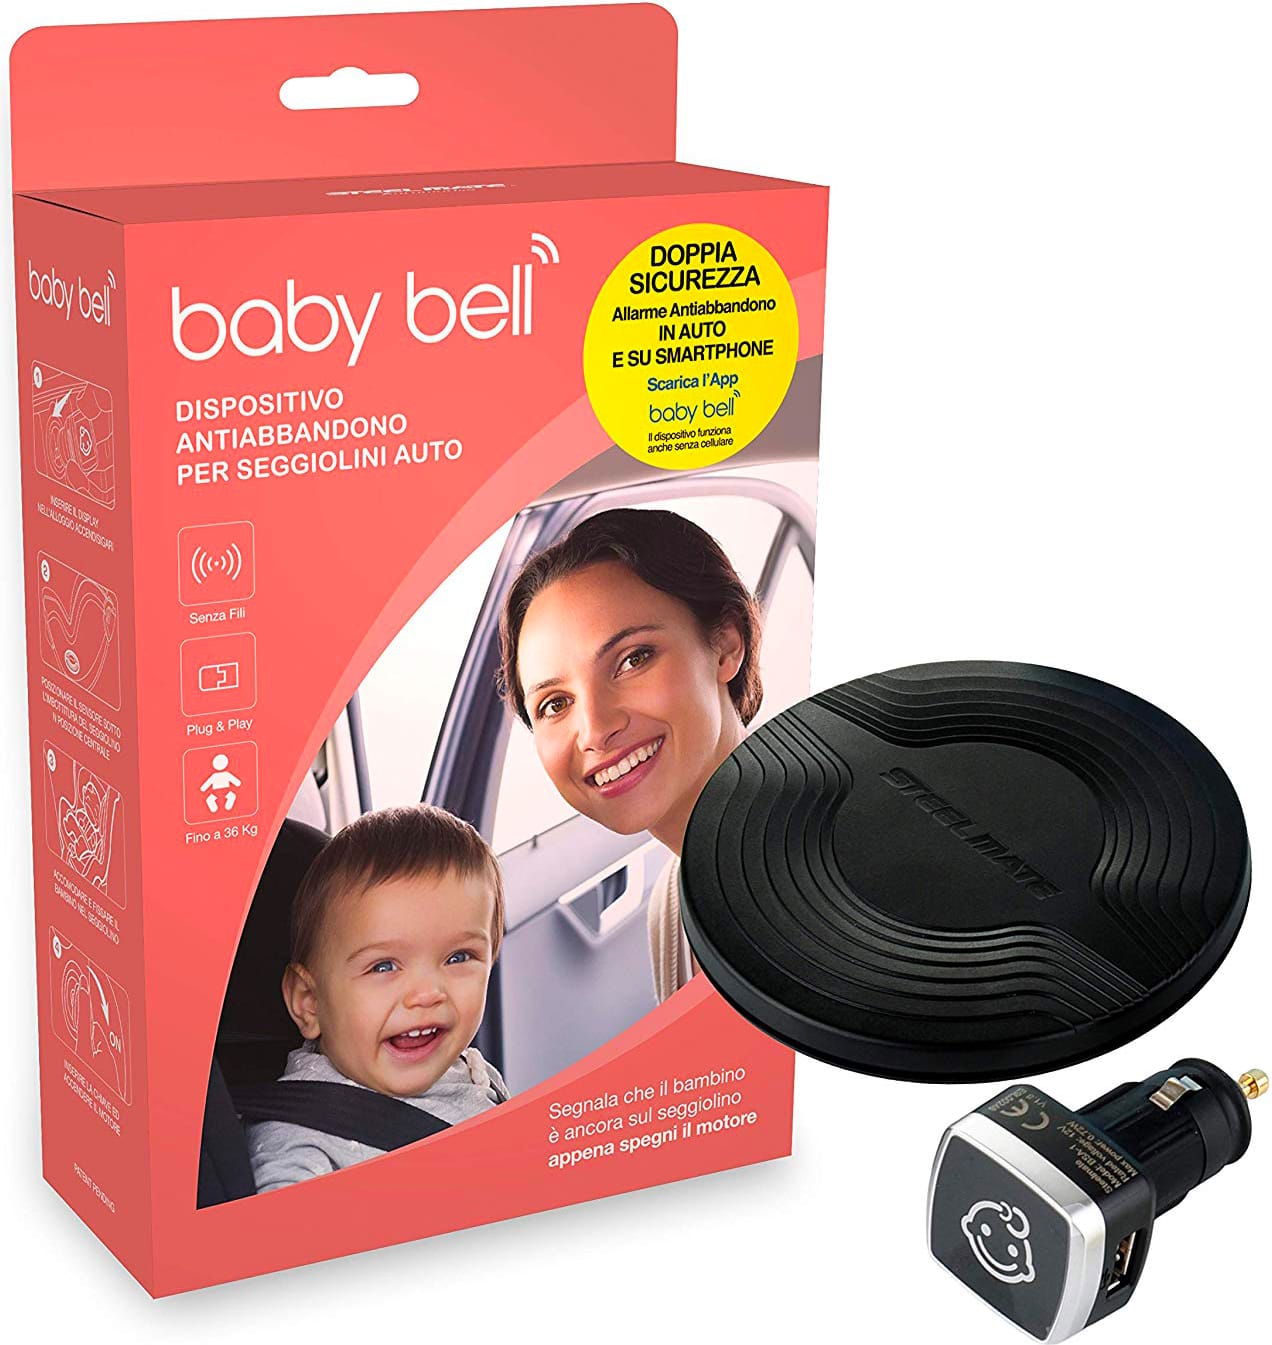 steelmate Bsa-1 Dispositivo Anti Abbandono Per Seggiolino Auto Allarme Sonoro E Visivo Compatibile Android/ios - Bsa-1 Baby Bell